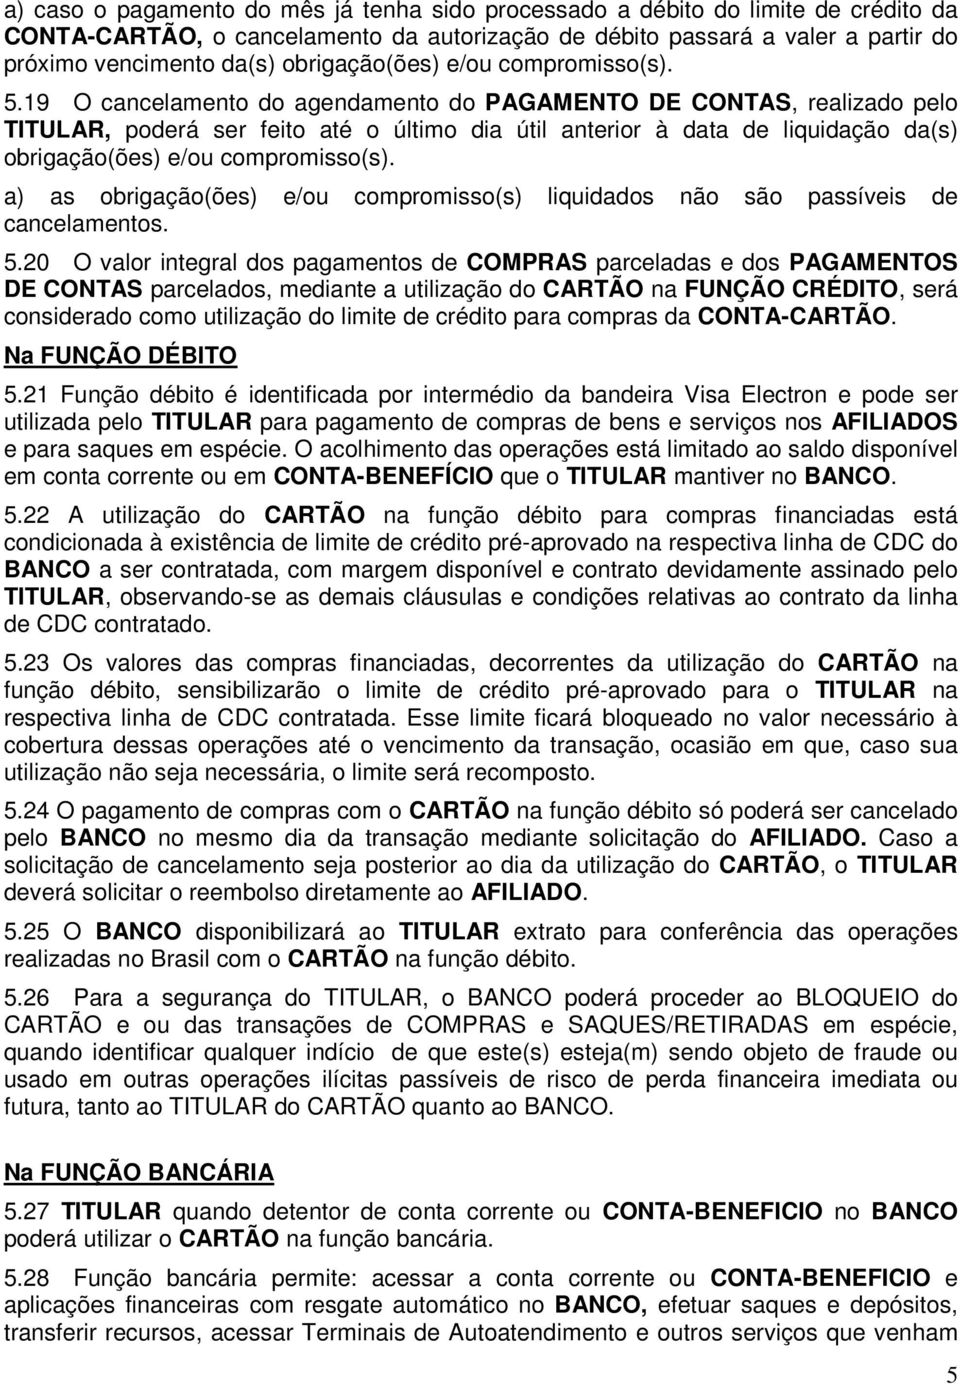 19 O cancelamento do agendamento do PAGAMENTO DE CONTAS, realizado pelo TITULAR, poderá ser feito até o último dia útil anterior à data de liquidação da(s) obrigação(ões) e/ou compromisso(s).